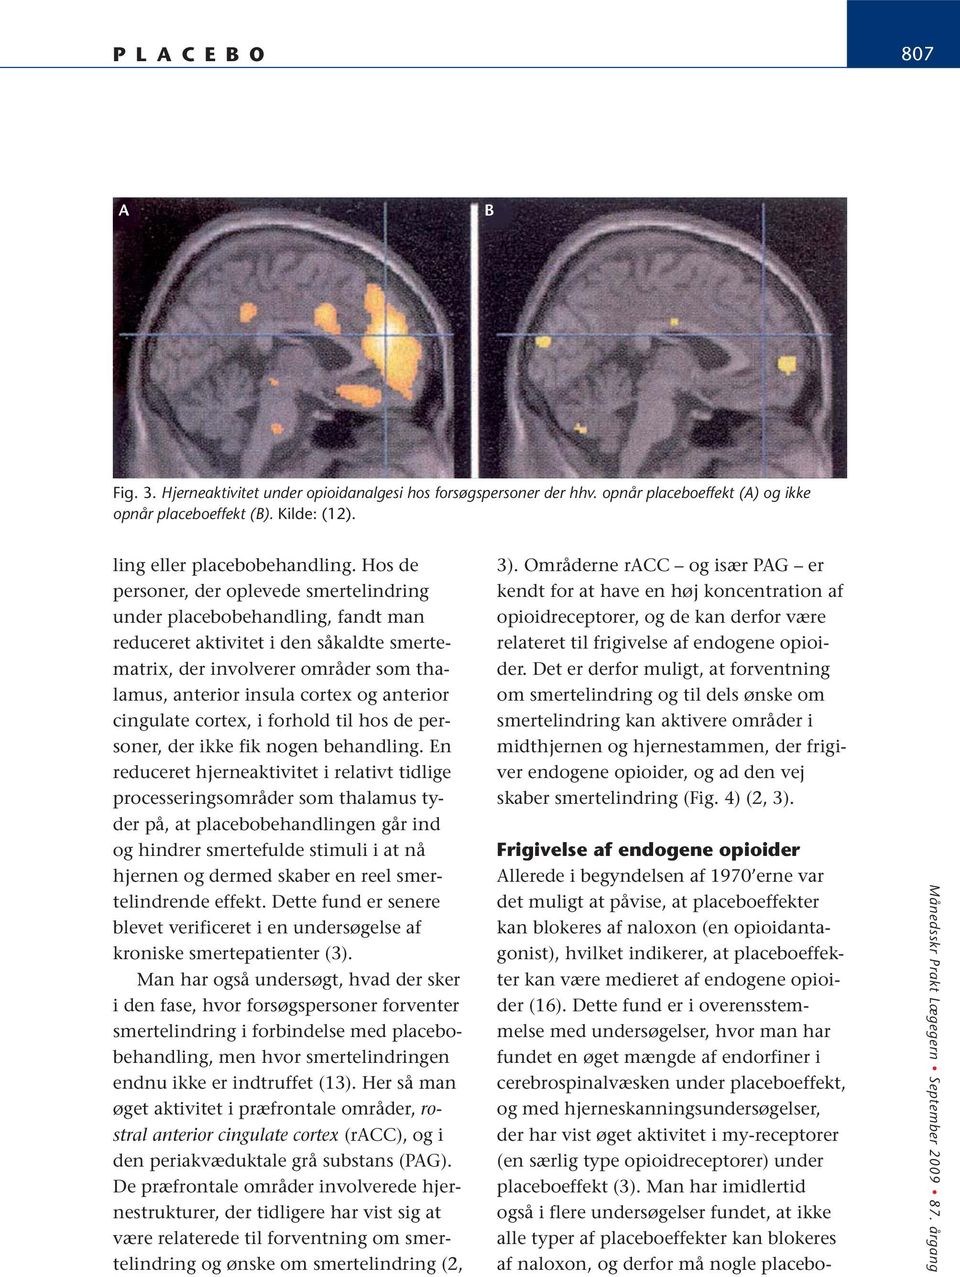 anterior cingulate cortex, i forhold til hos de personer, der ikke fik nogen behandling.